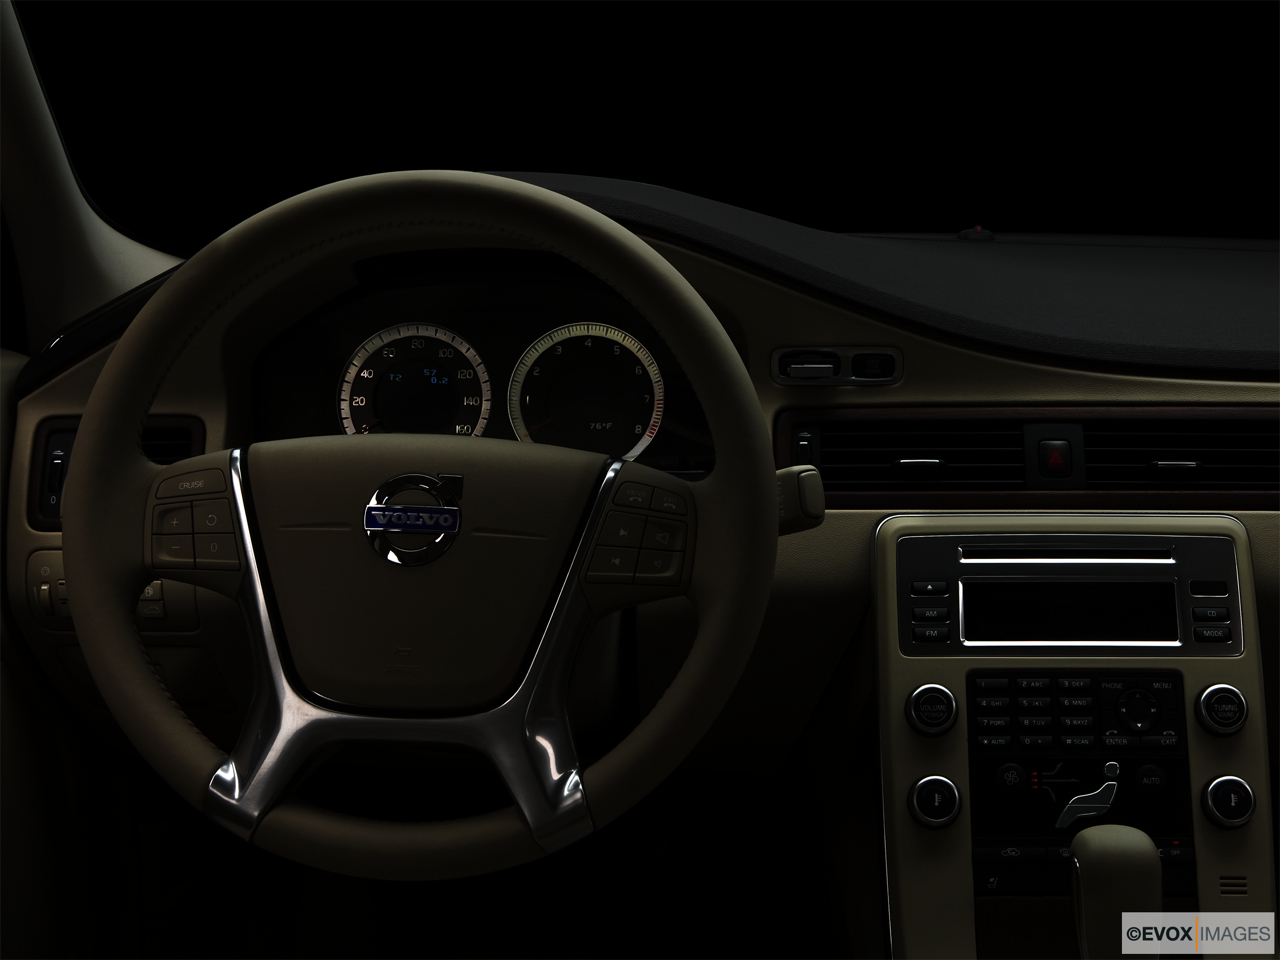 2010 Volvo S80 3.2 Centered wide dash shot - "night" shot. 